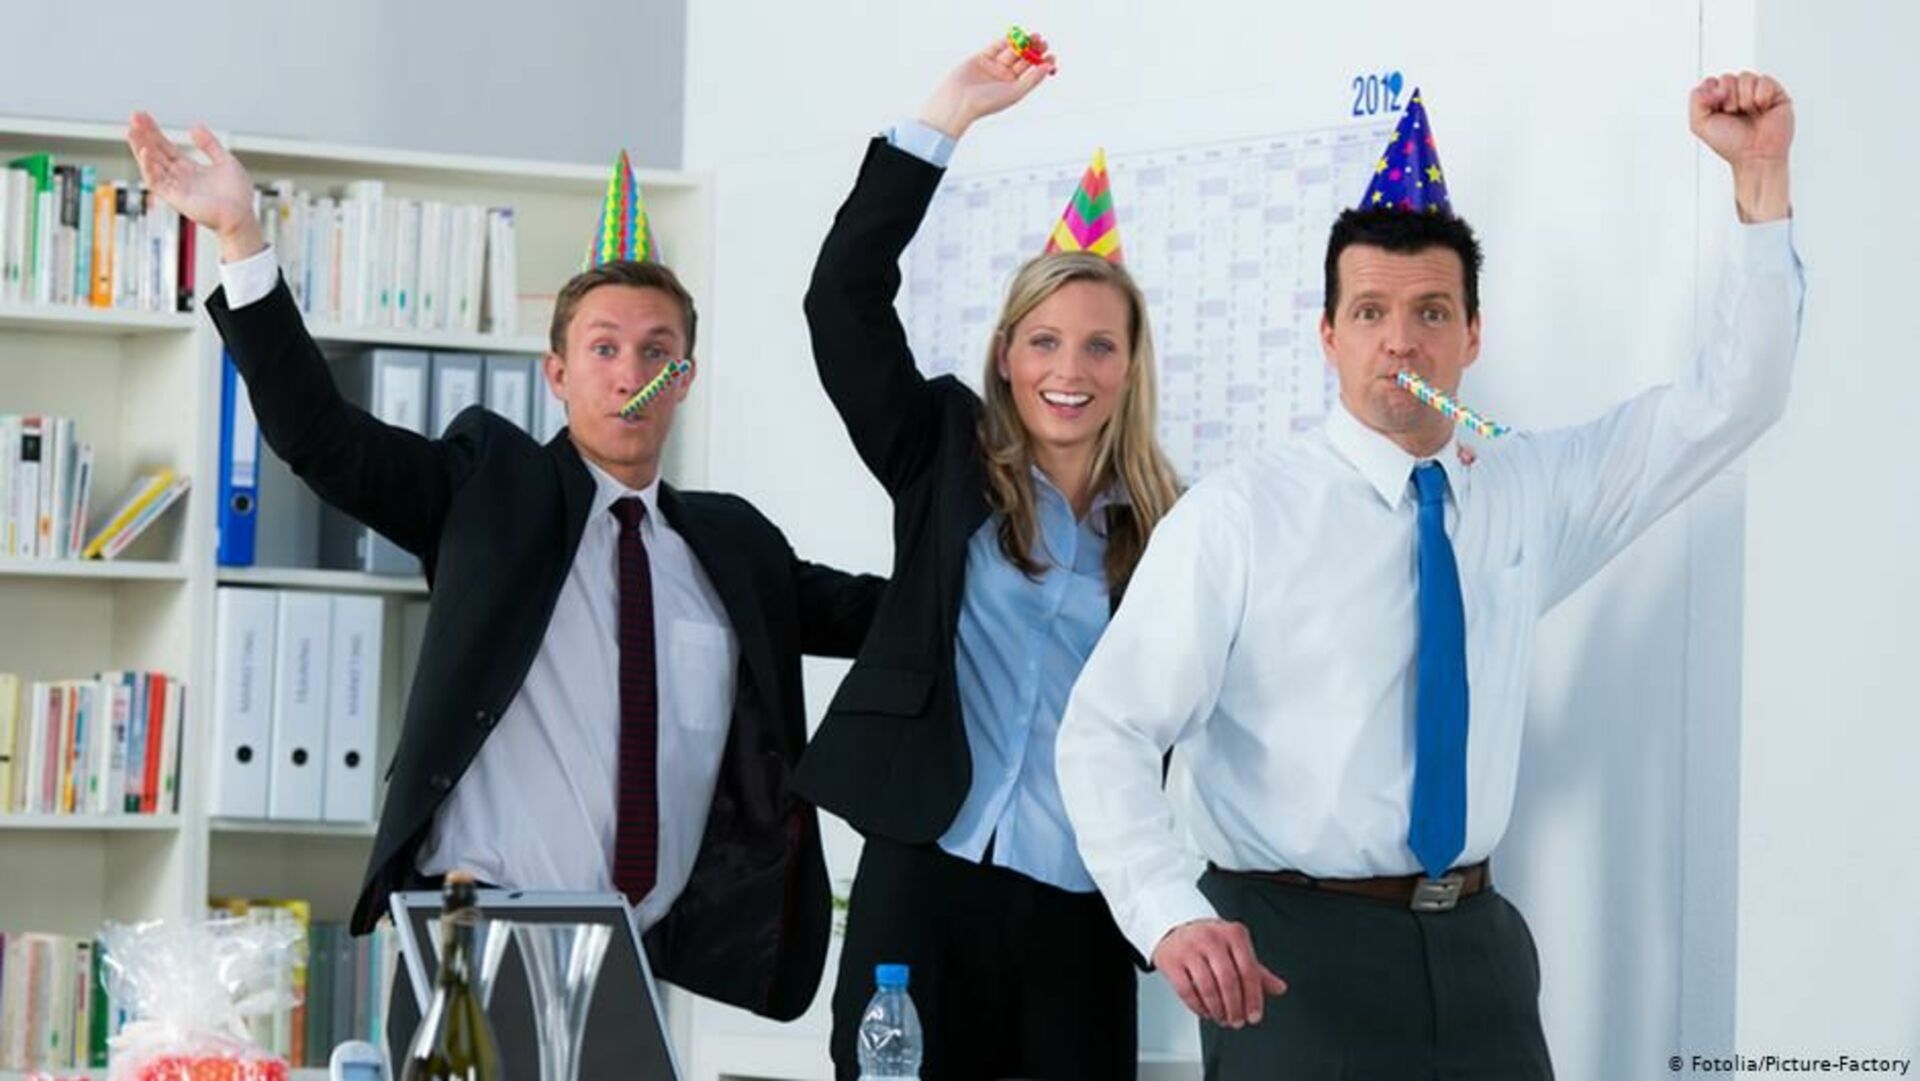 Нашему офису 3 года. Корпоратив в офисе. Корпоративная вечеринка в офисе. Веселая встреча коллег. Человек праздник.